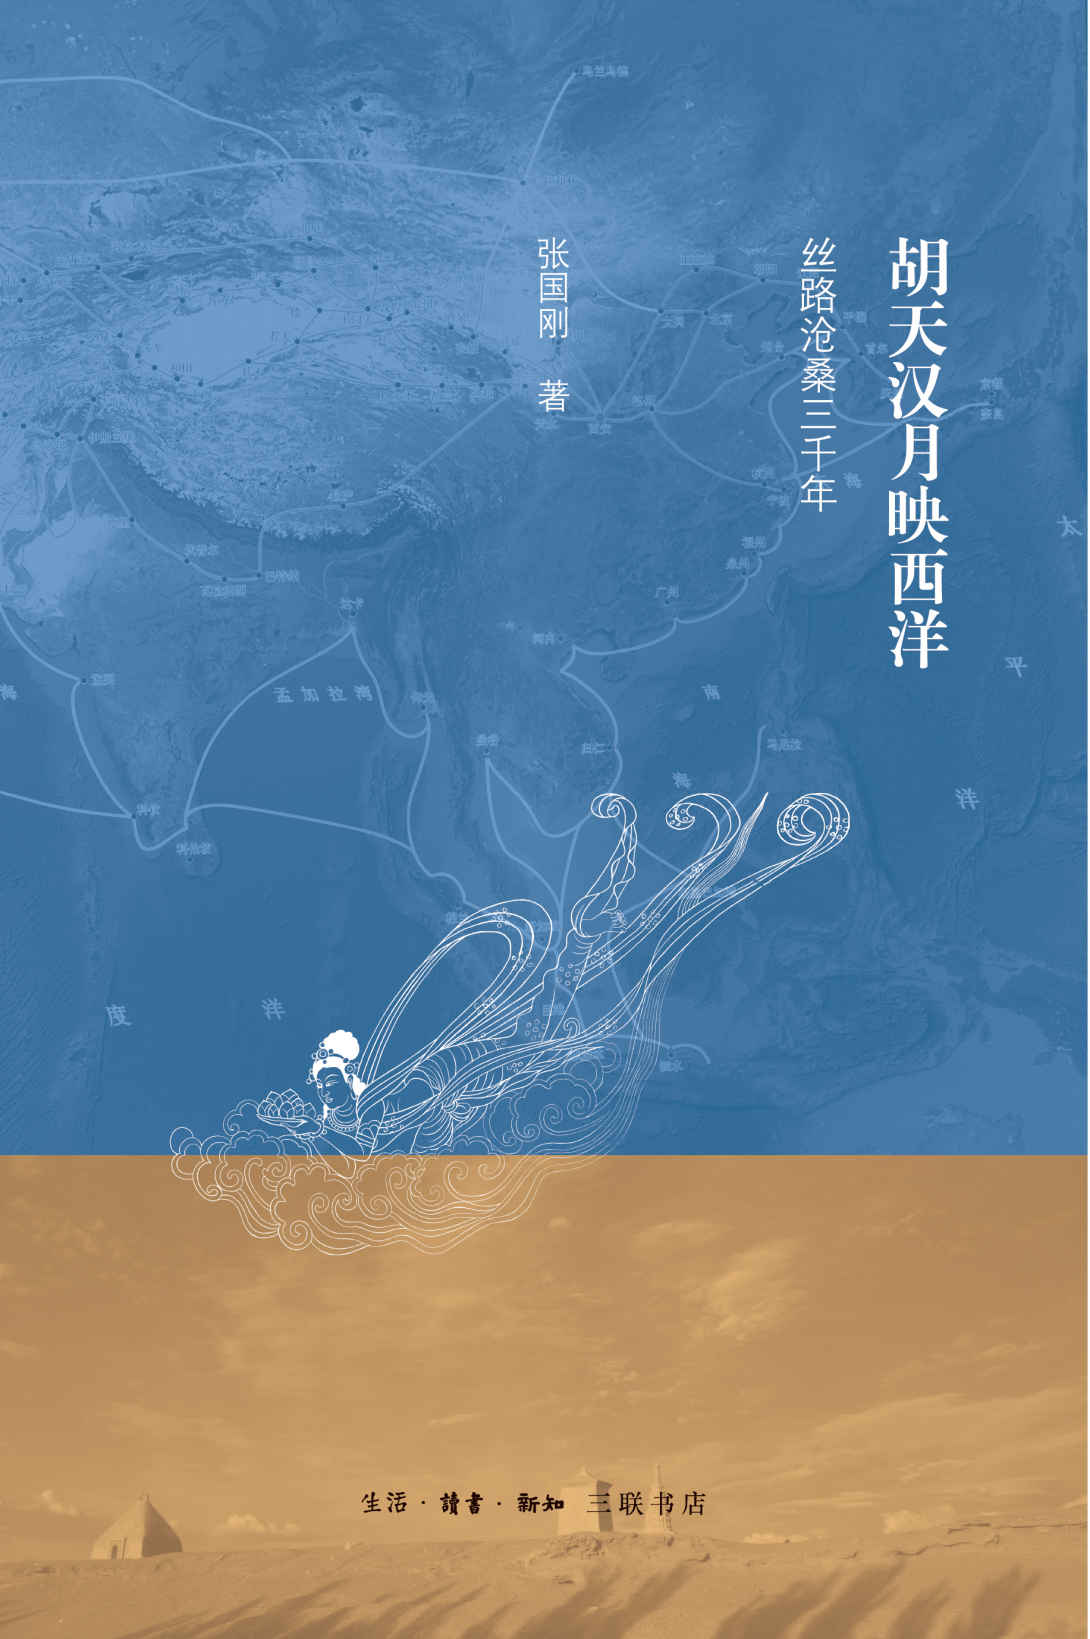 胡天汉月映西洋——丝路沧桑三千年